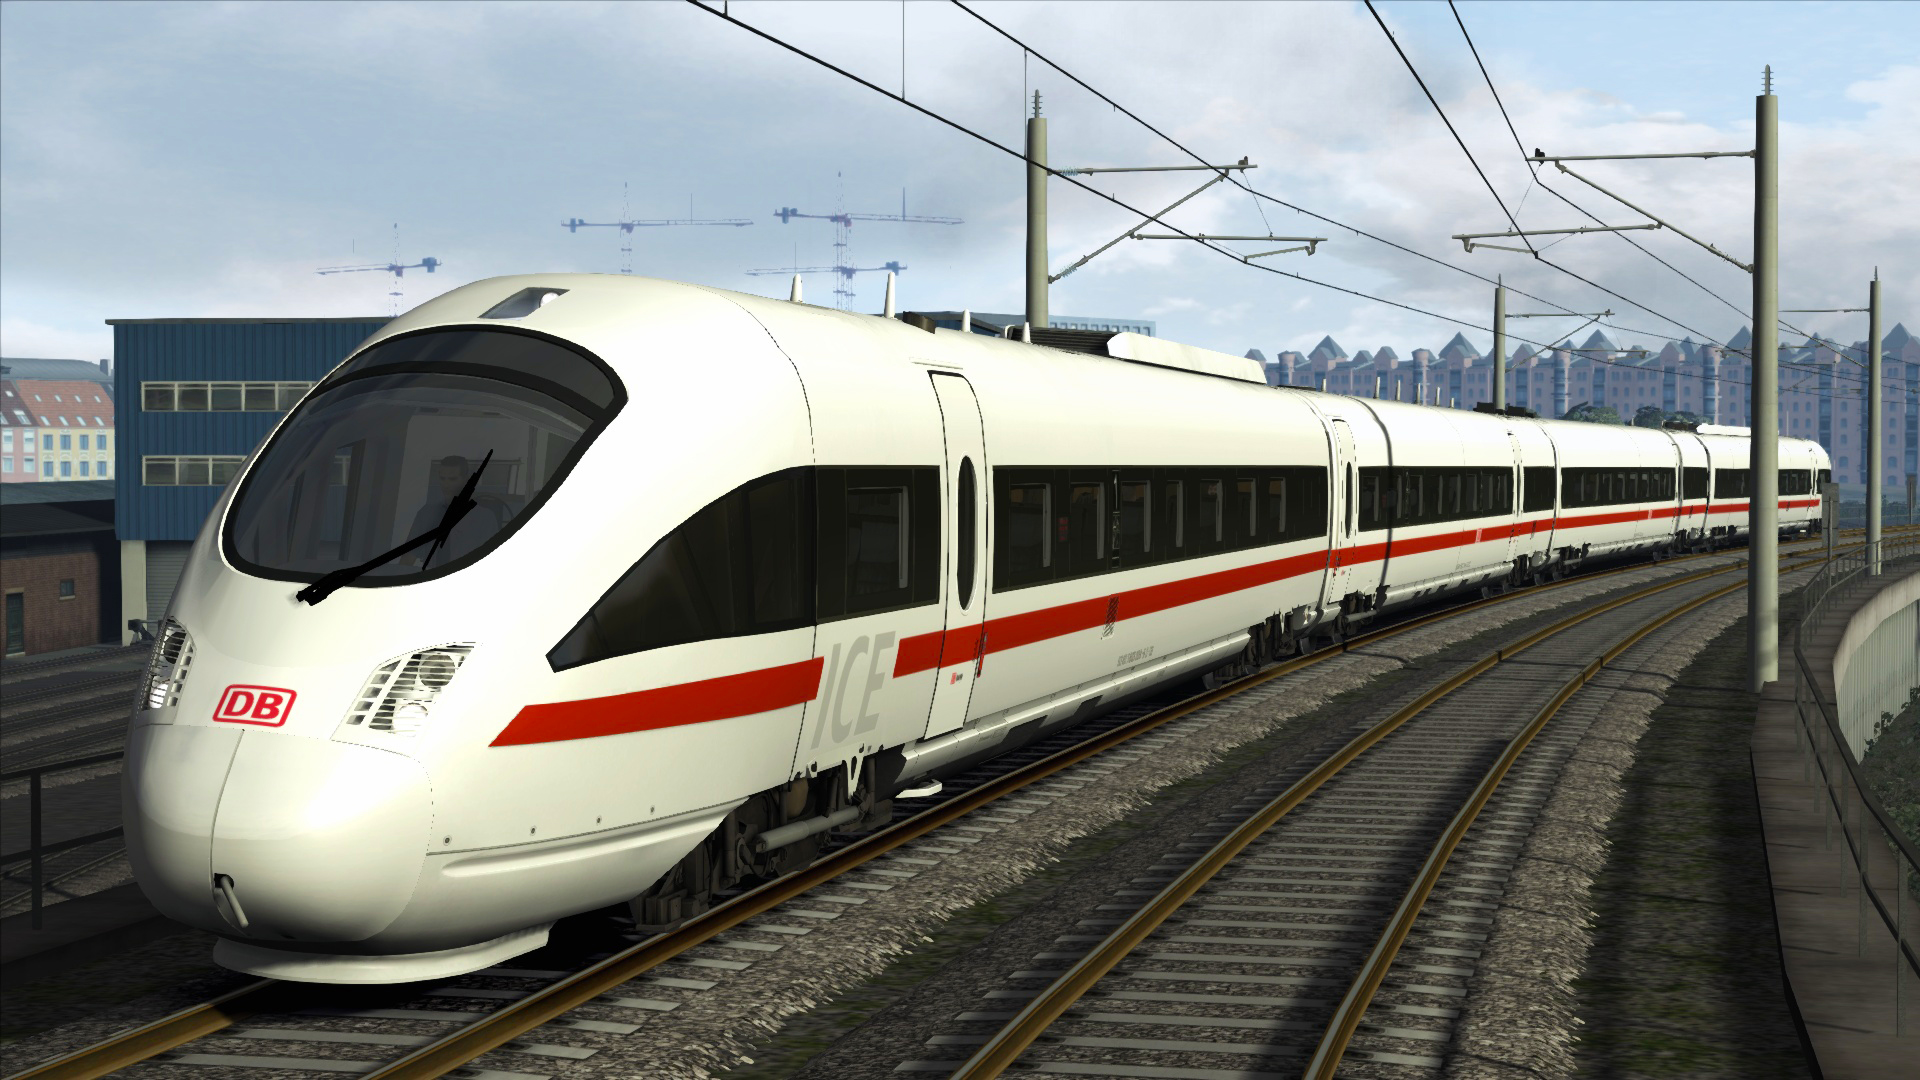 Train Simulator - DB BR 605 ICE TD Add-On DLC Steam CD Key $1.34